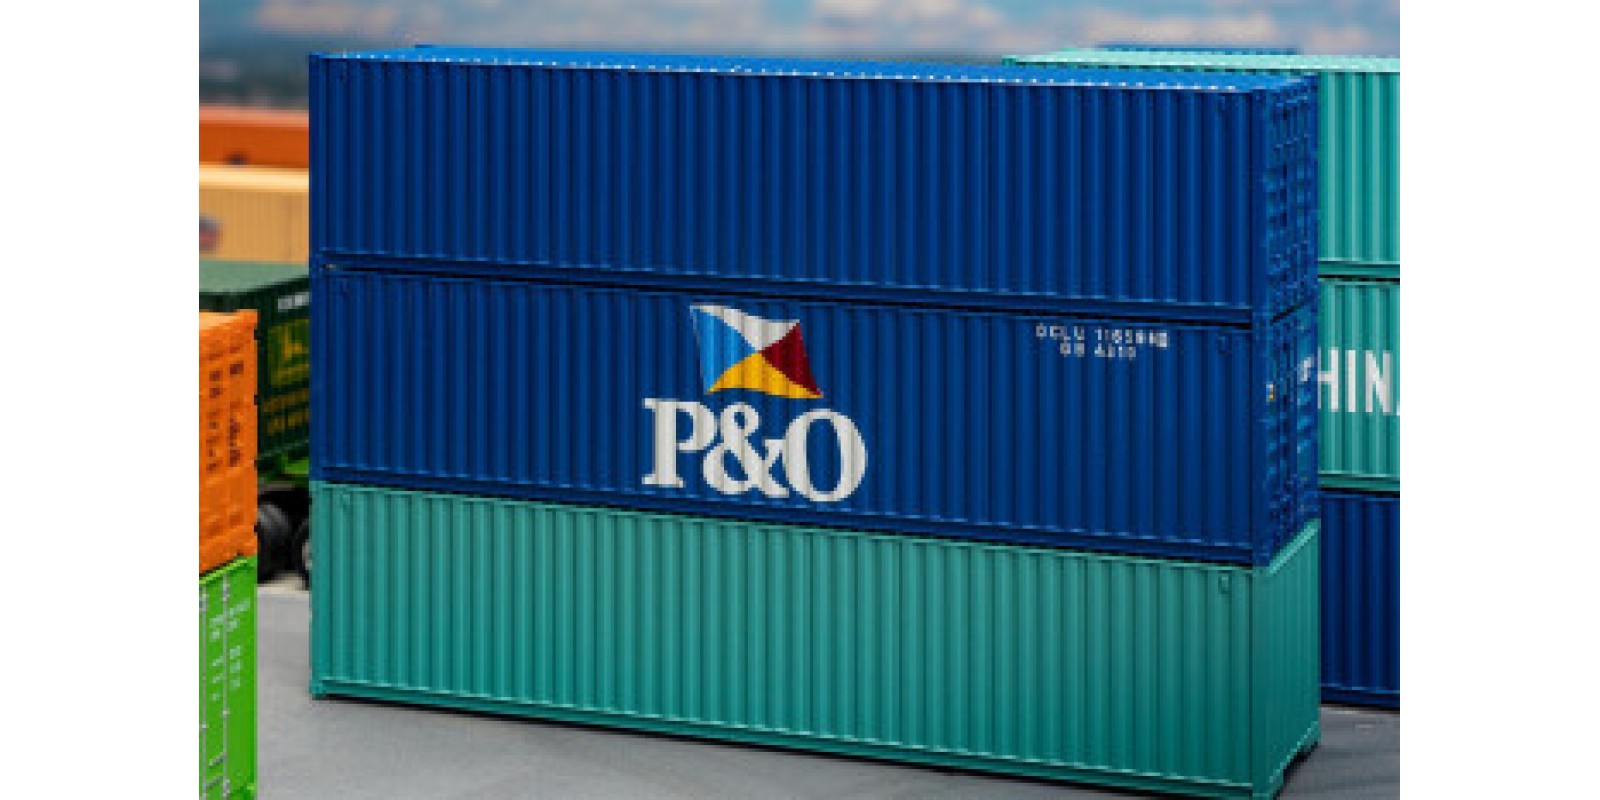 FA182104 40' Container P&O